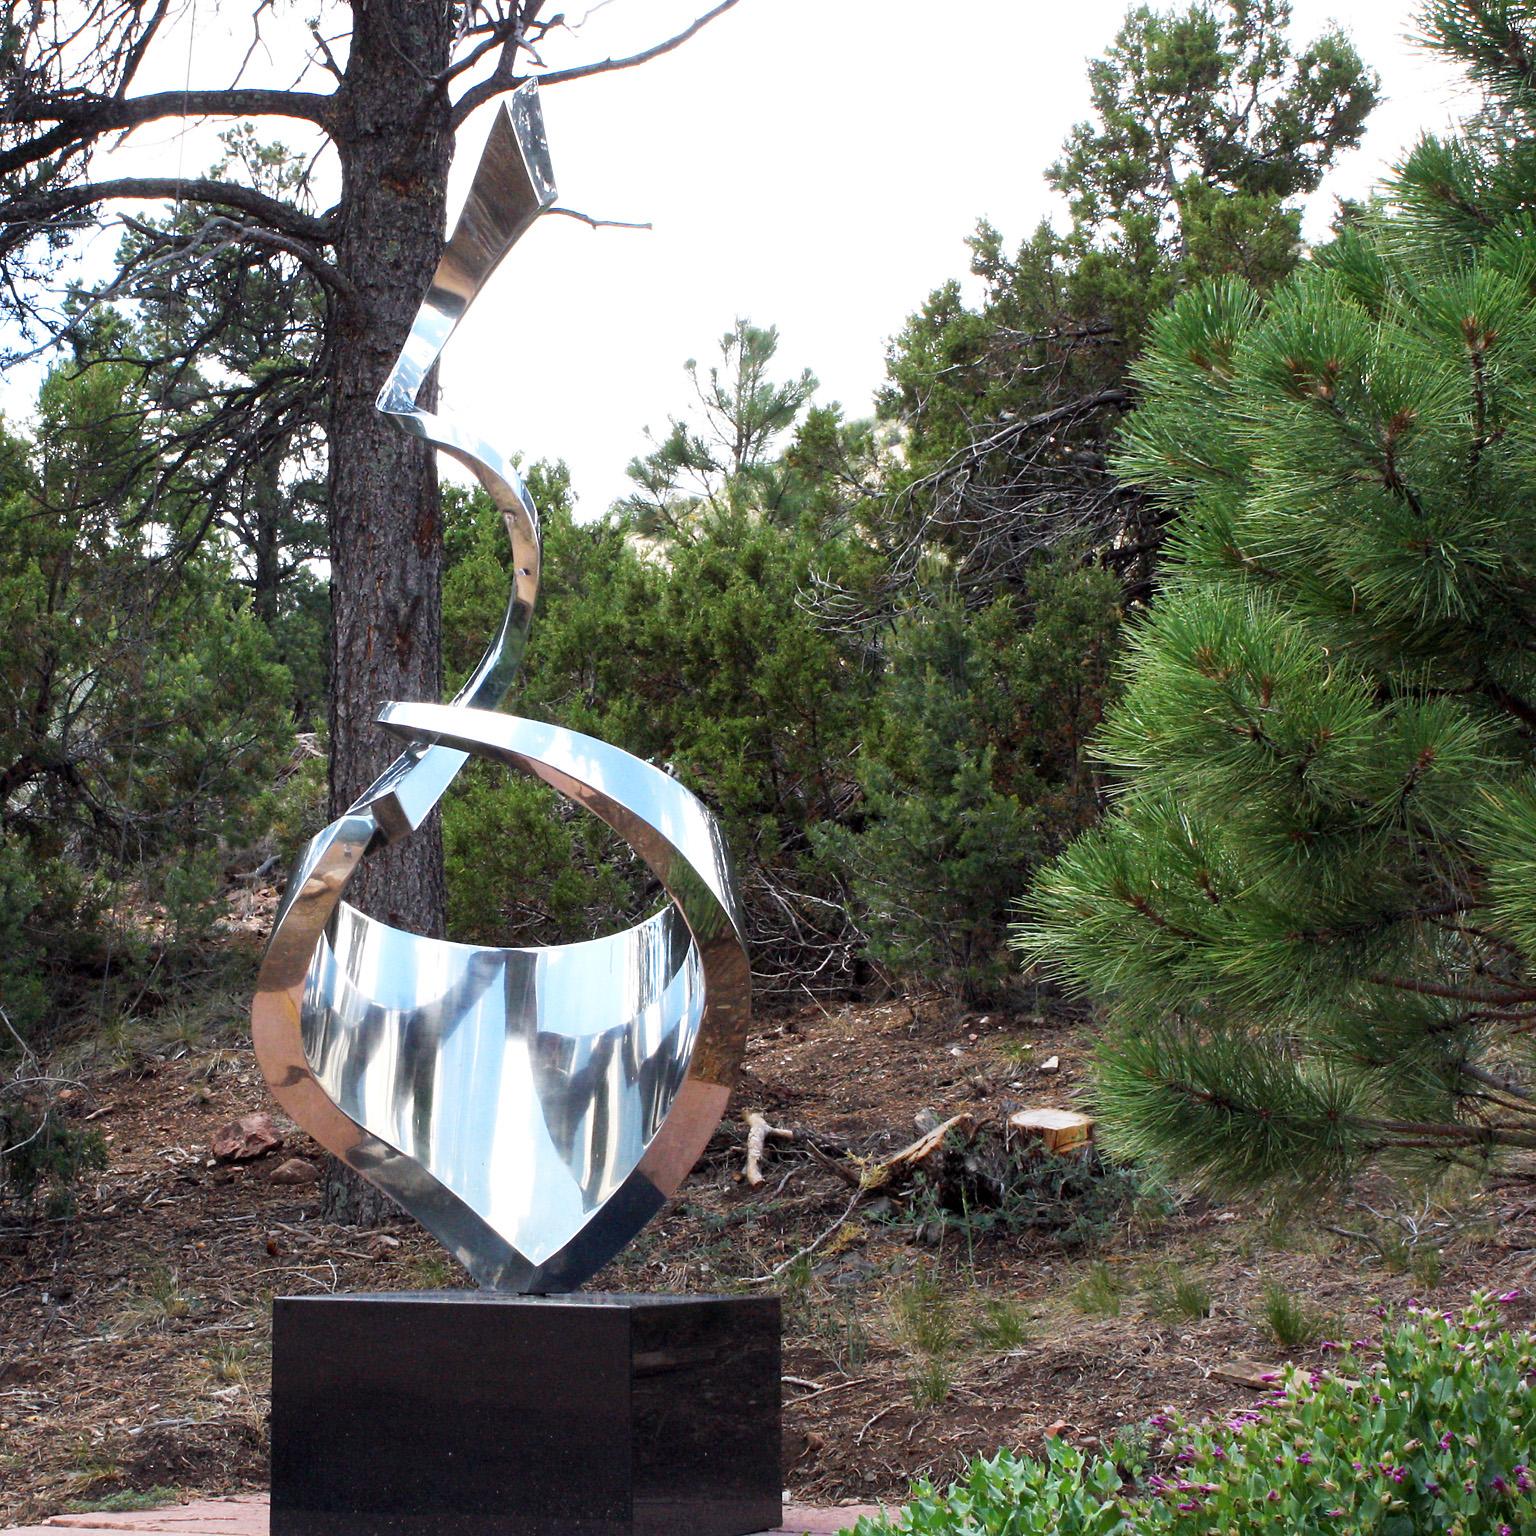 "Aja" von Gino Miles
Abstrakte Skulptur aus rostfreiem Stahl

Gino Miles arbeitet hauptsächlich mit Edelstahl und Bronze und schafft Werke, die sich auf eleganten Minimalismus und klare Linien und Formen konzentrieren. Die geschwungene, oft